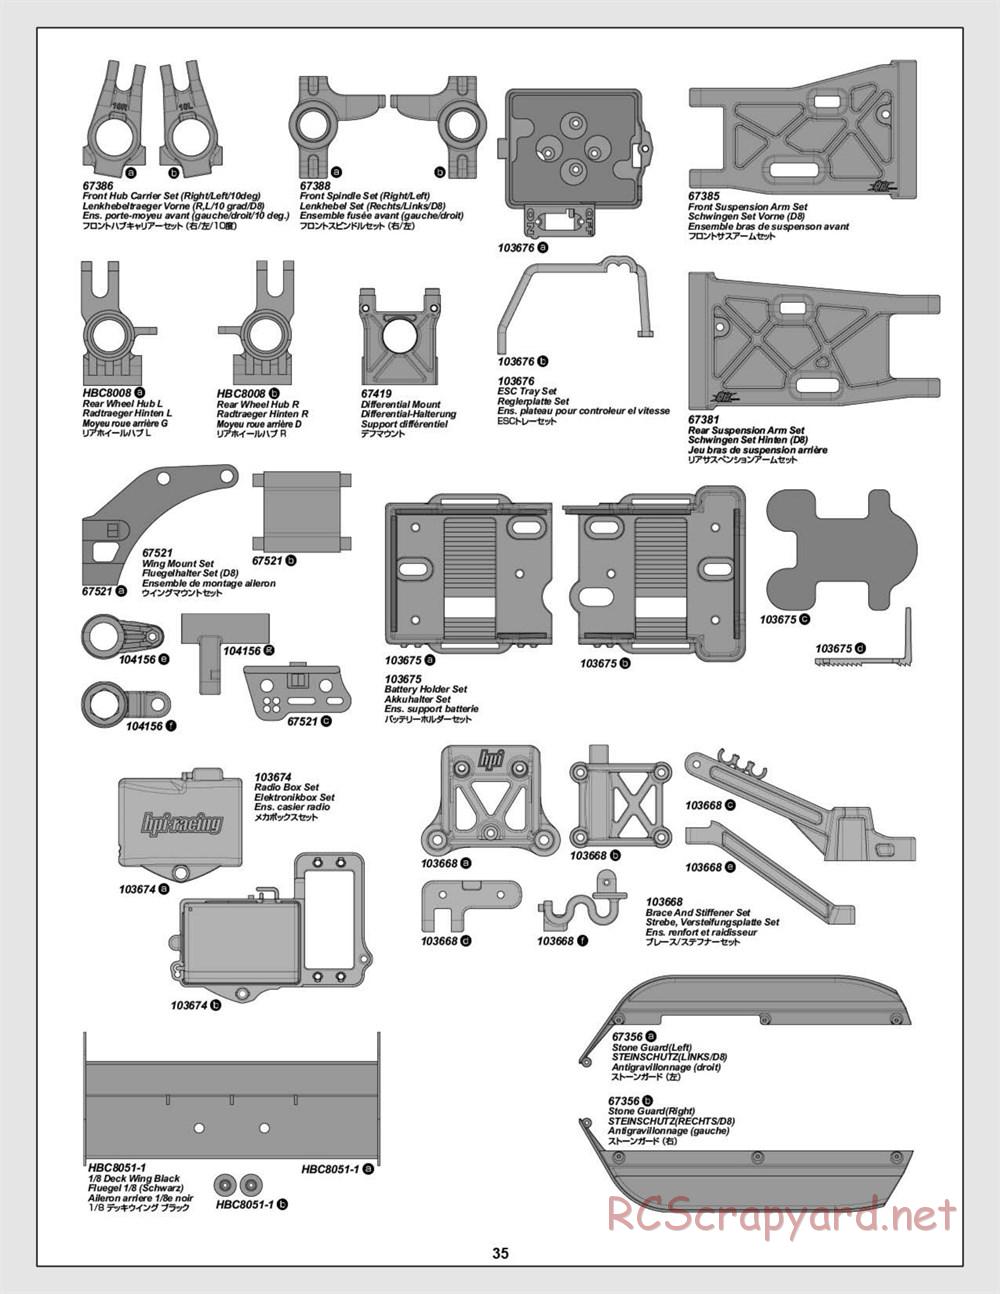 HPI - Vorza Flux HP - Manual - Page 35